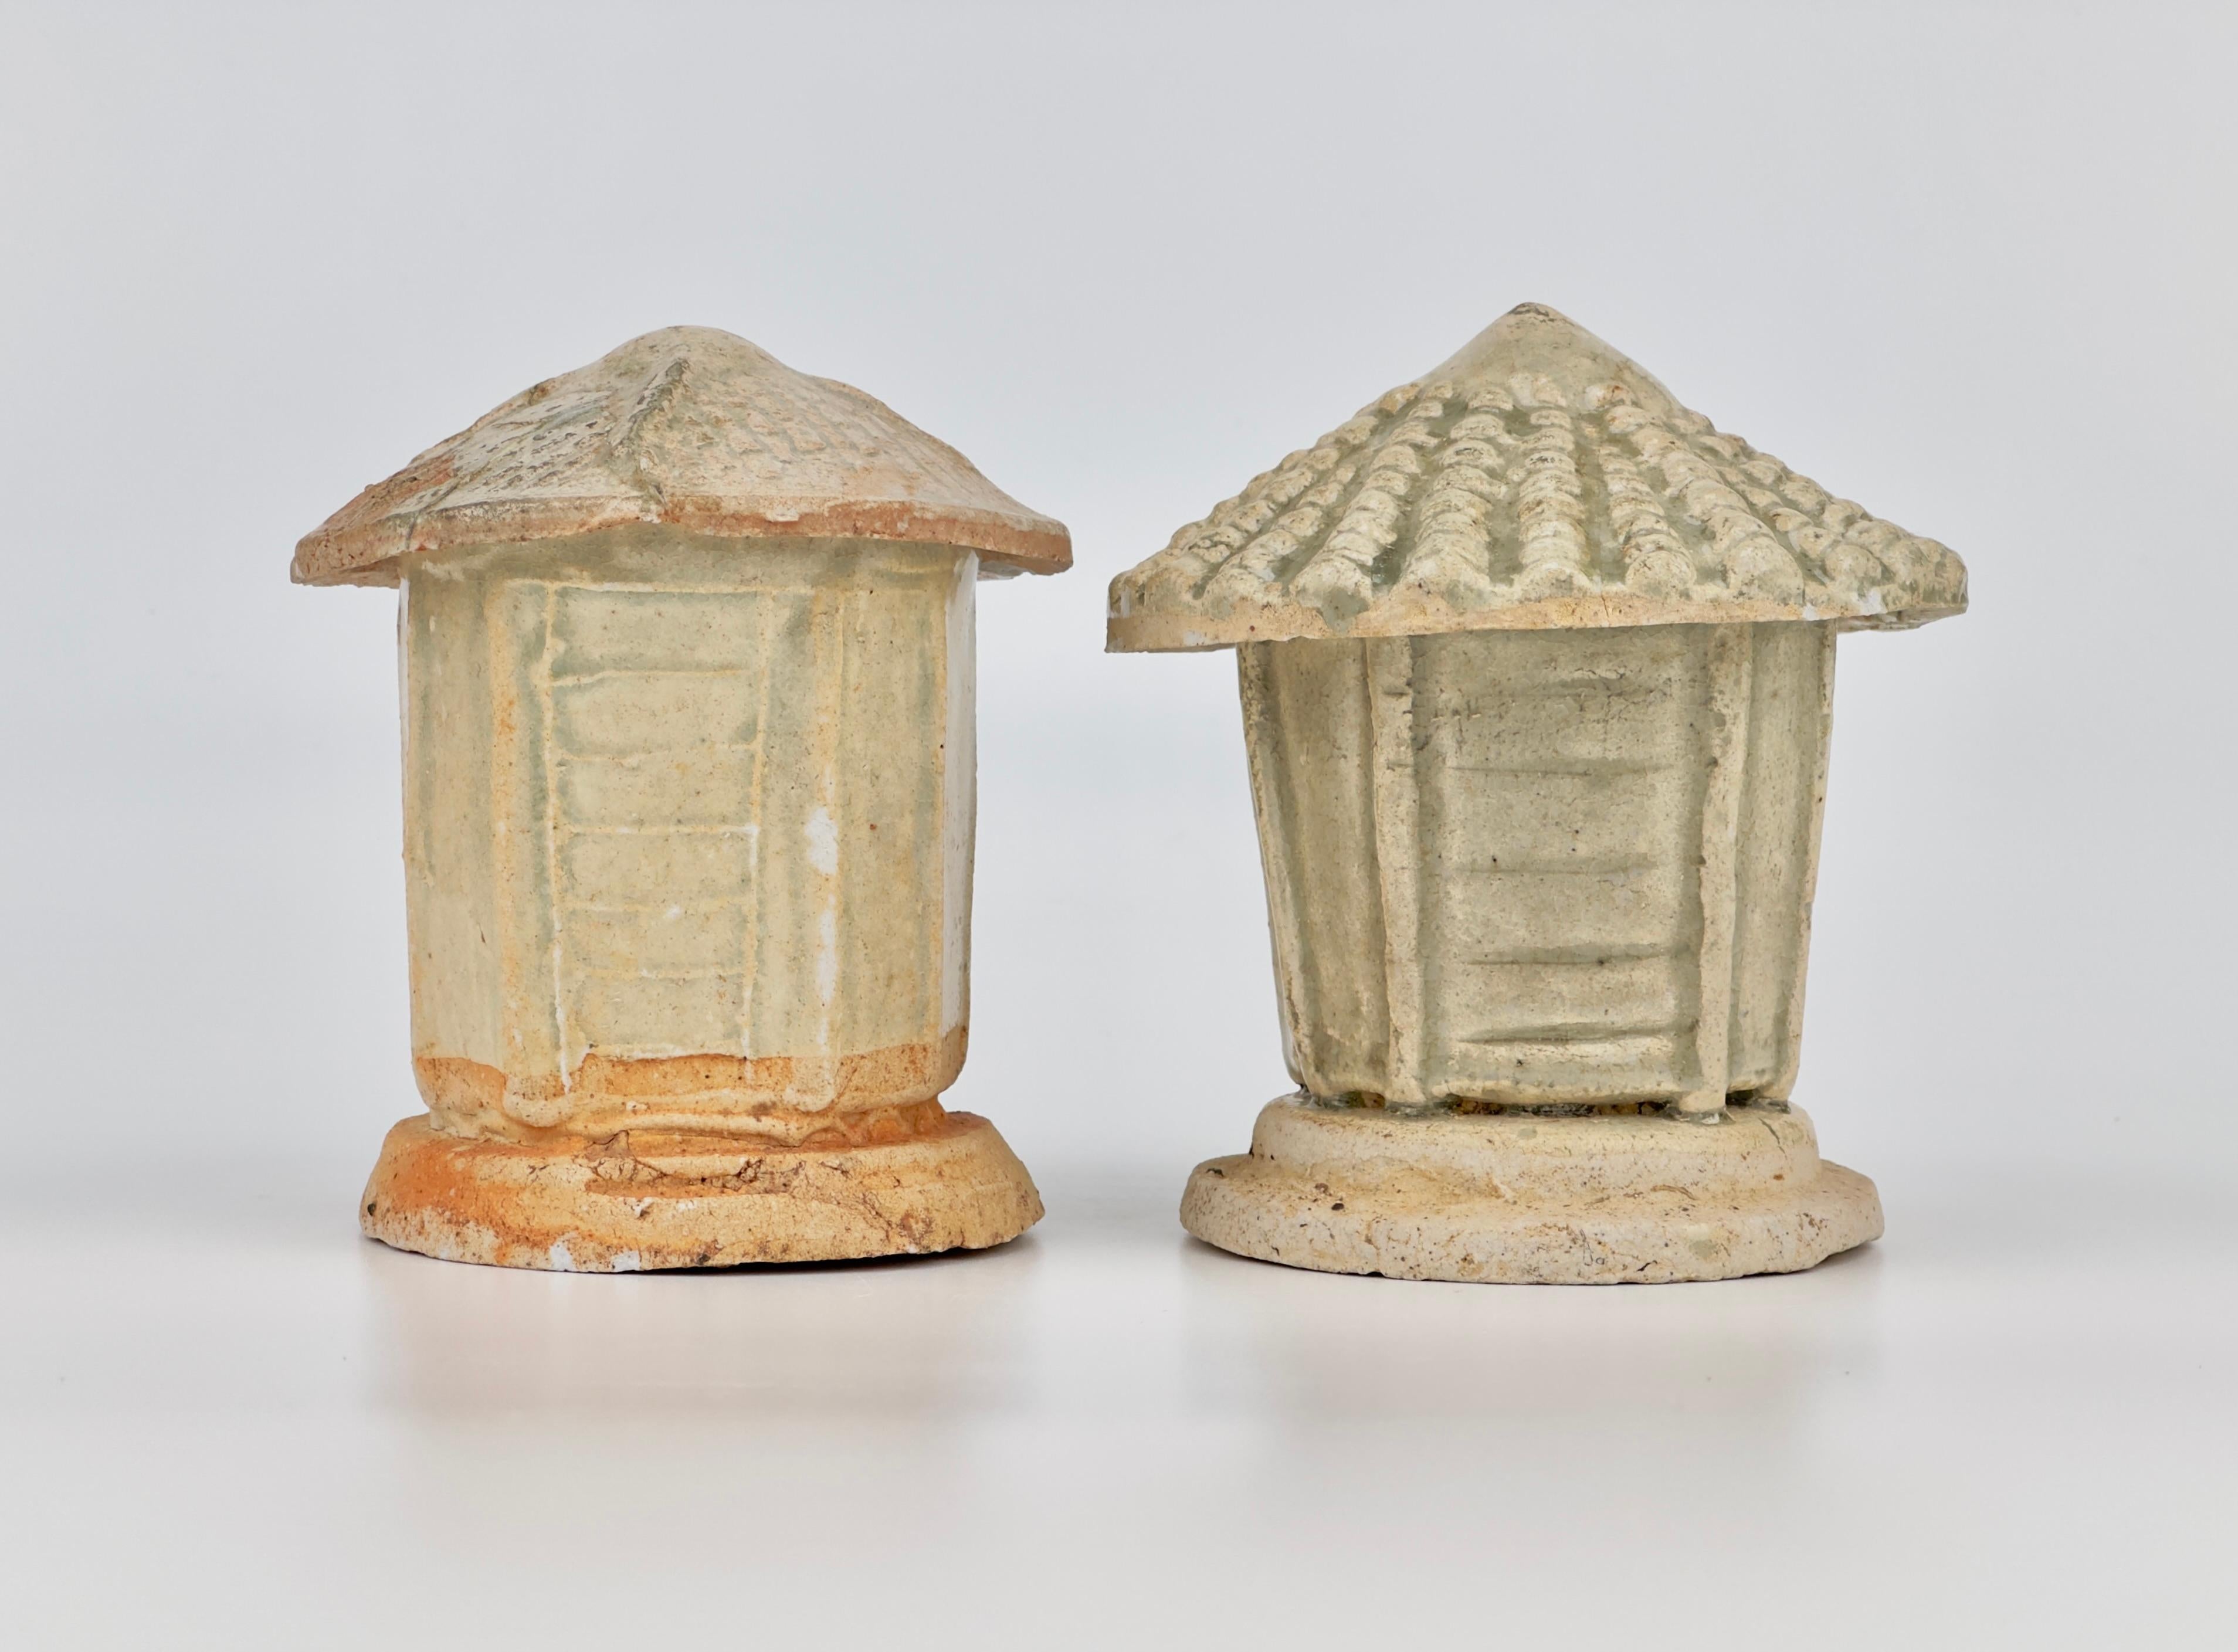 Deux porcelaines de type grenier. Asie de l'Est, Cette représentation en poterie d'un grenier à grains repose sur une base stratifiée, surmontée d'un couvercle conique qui fait également office de toit, le tout fini dans une glaçure gris-bleu